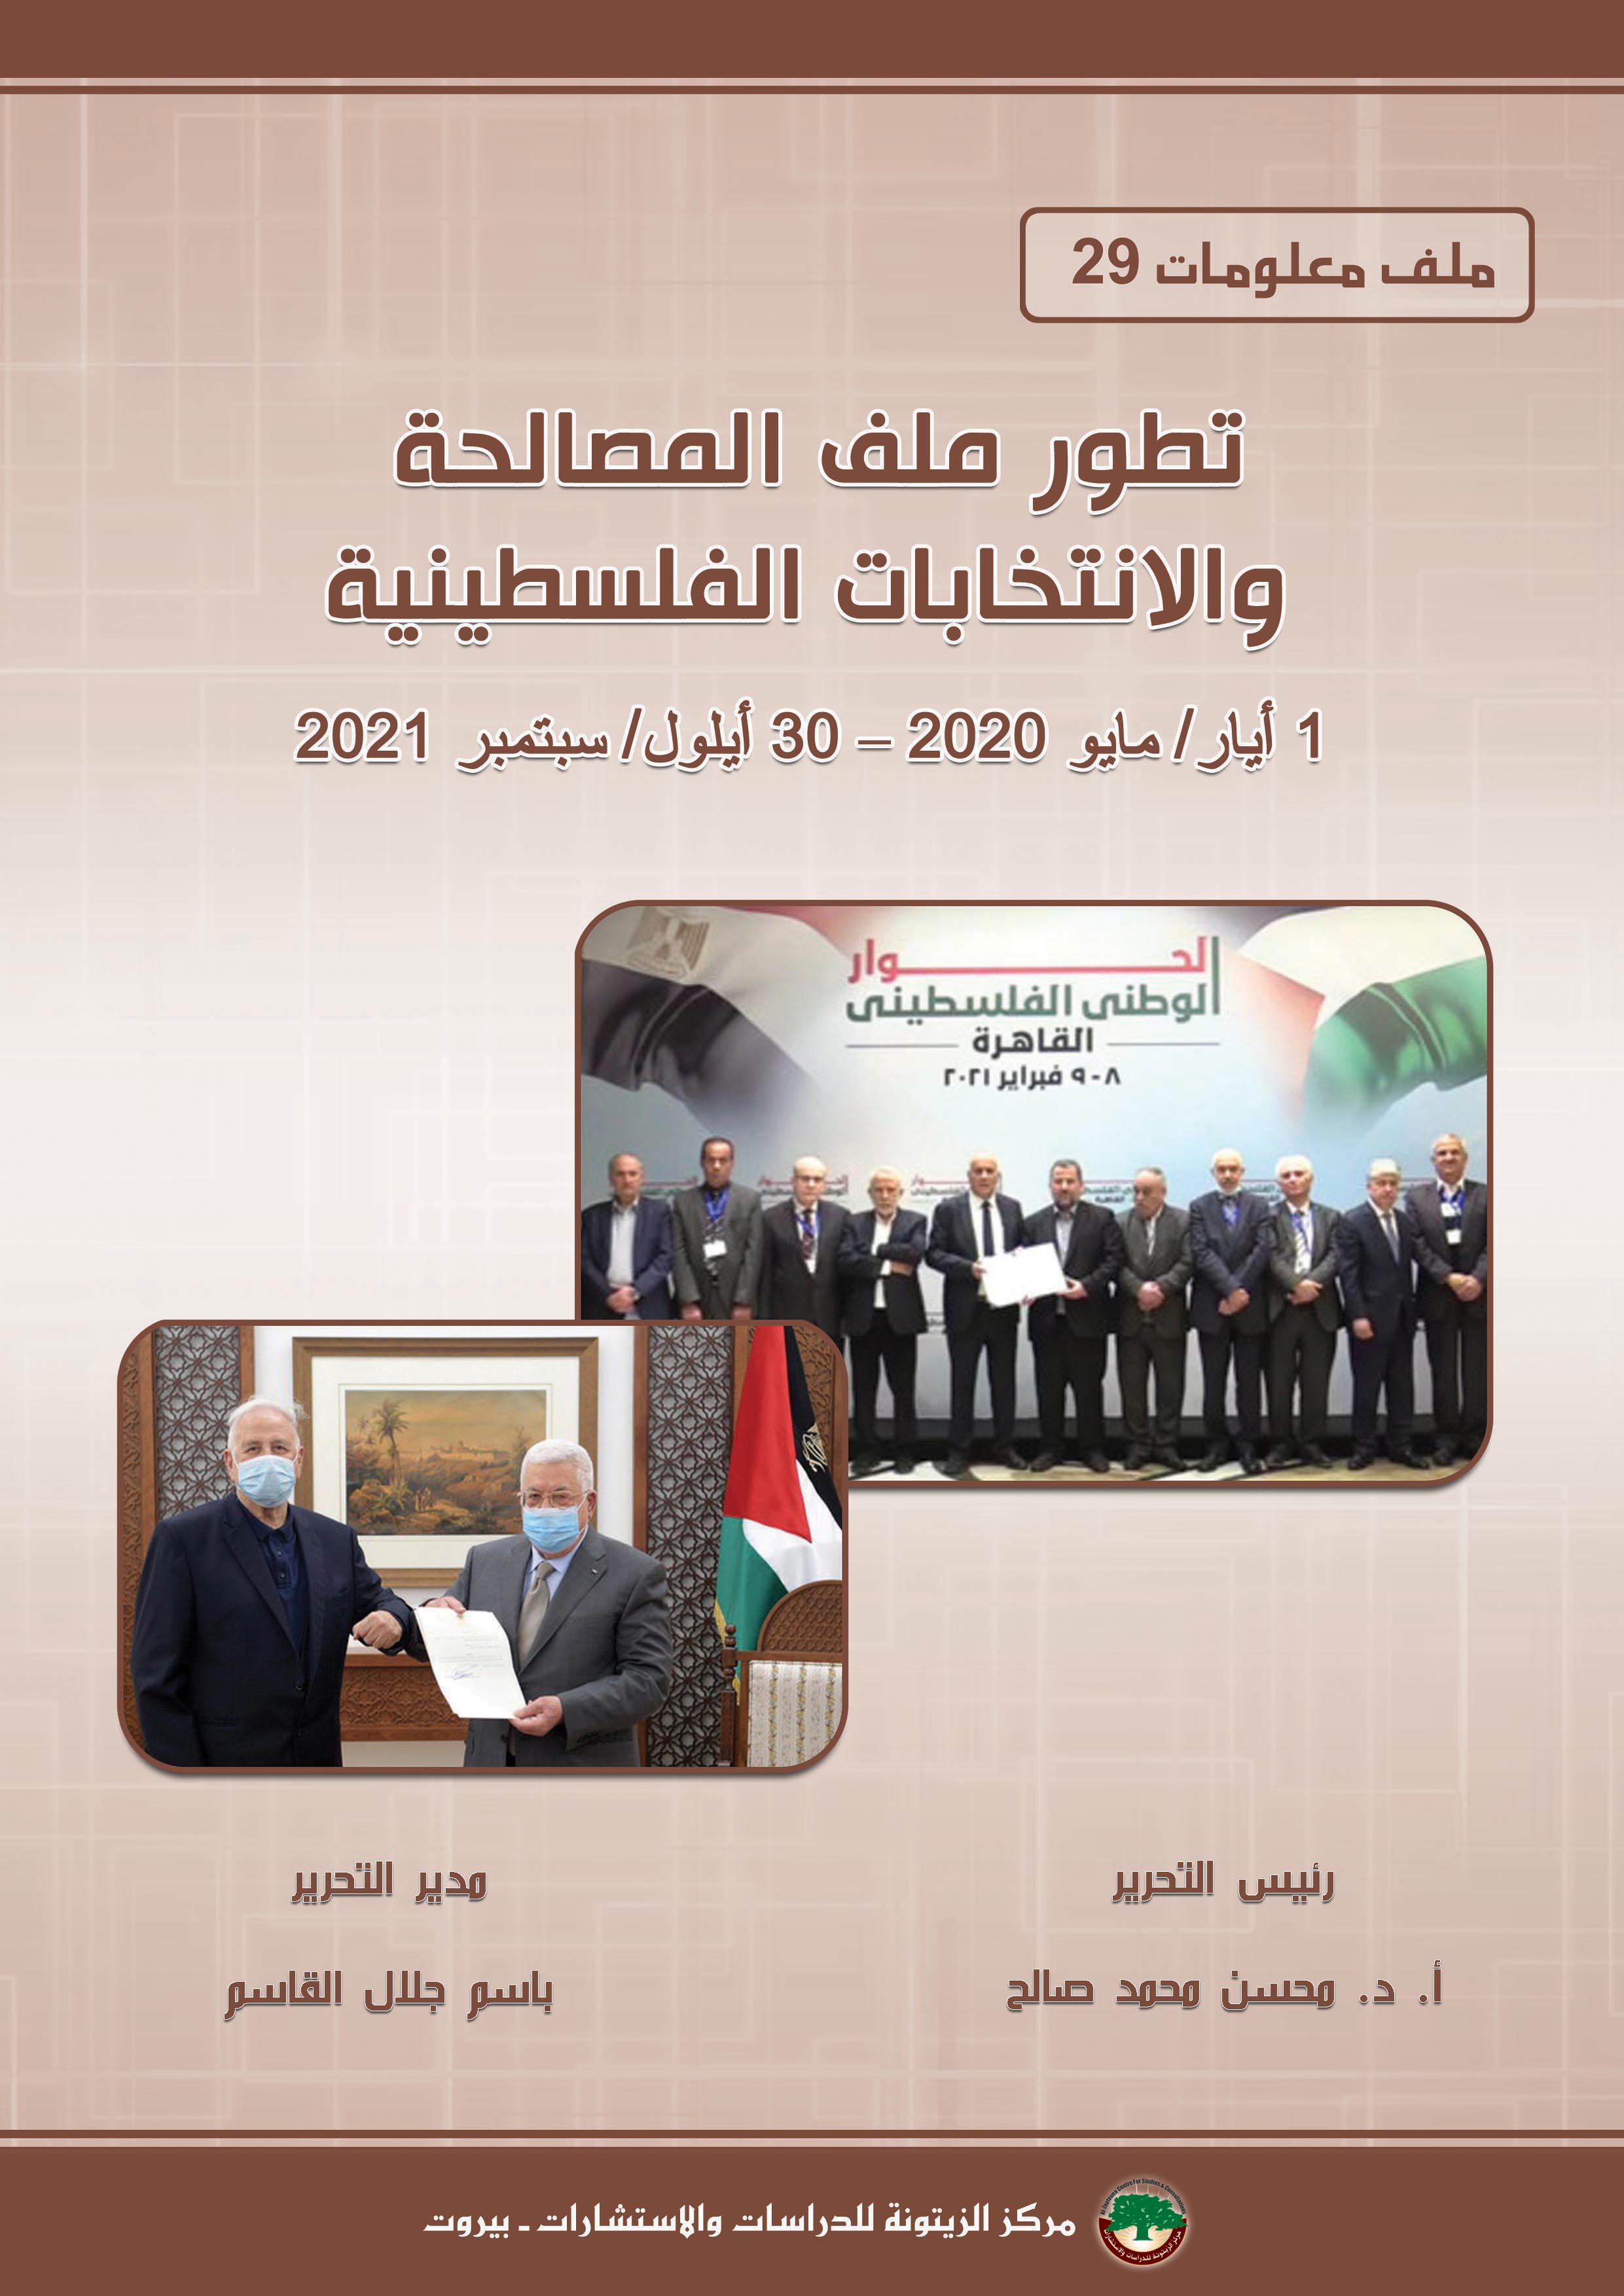 ملف معلومات (29): تطور ملف المصالحة والانتخابات الفلسطينية (1 أيار/ مايو 2020 – 30 أيلول/ سبتمبر 2021)